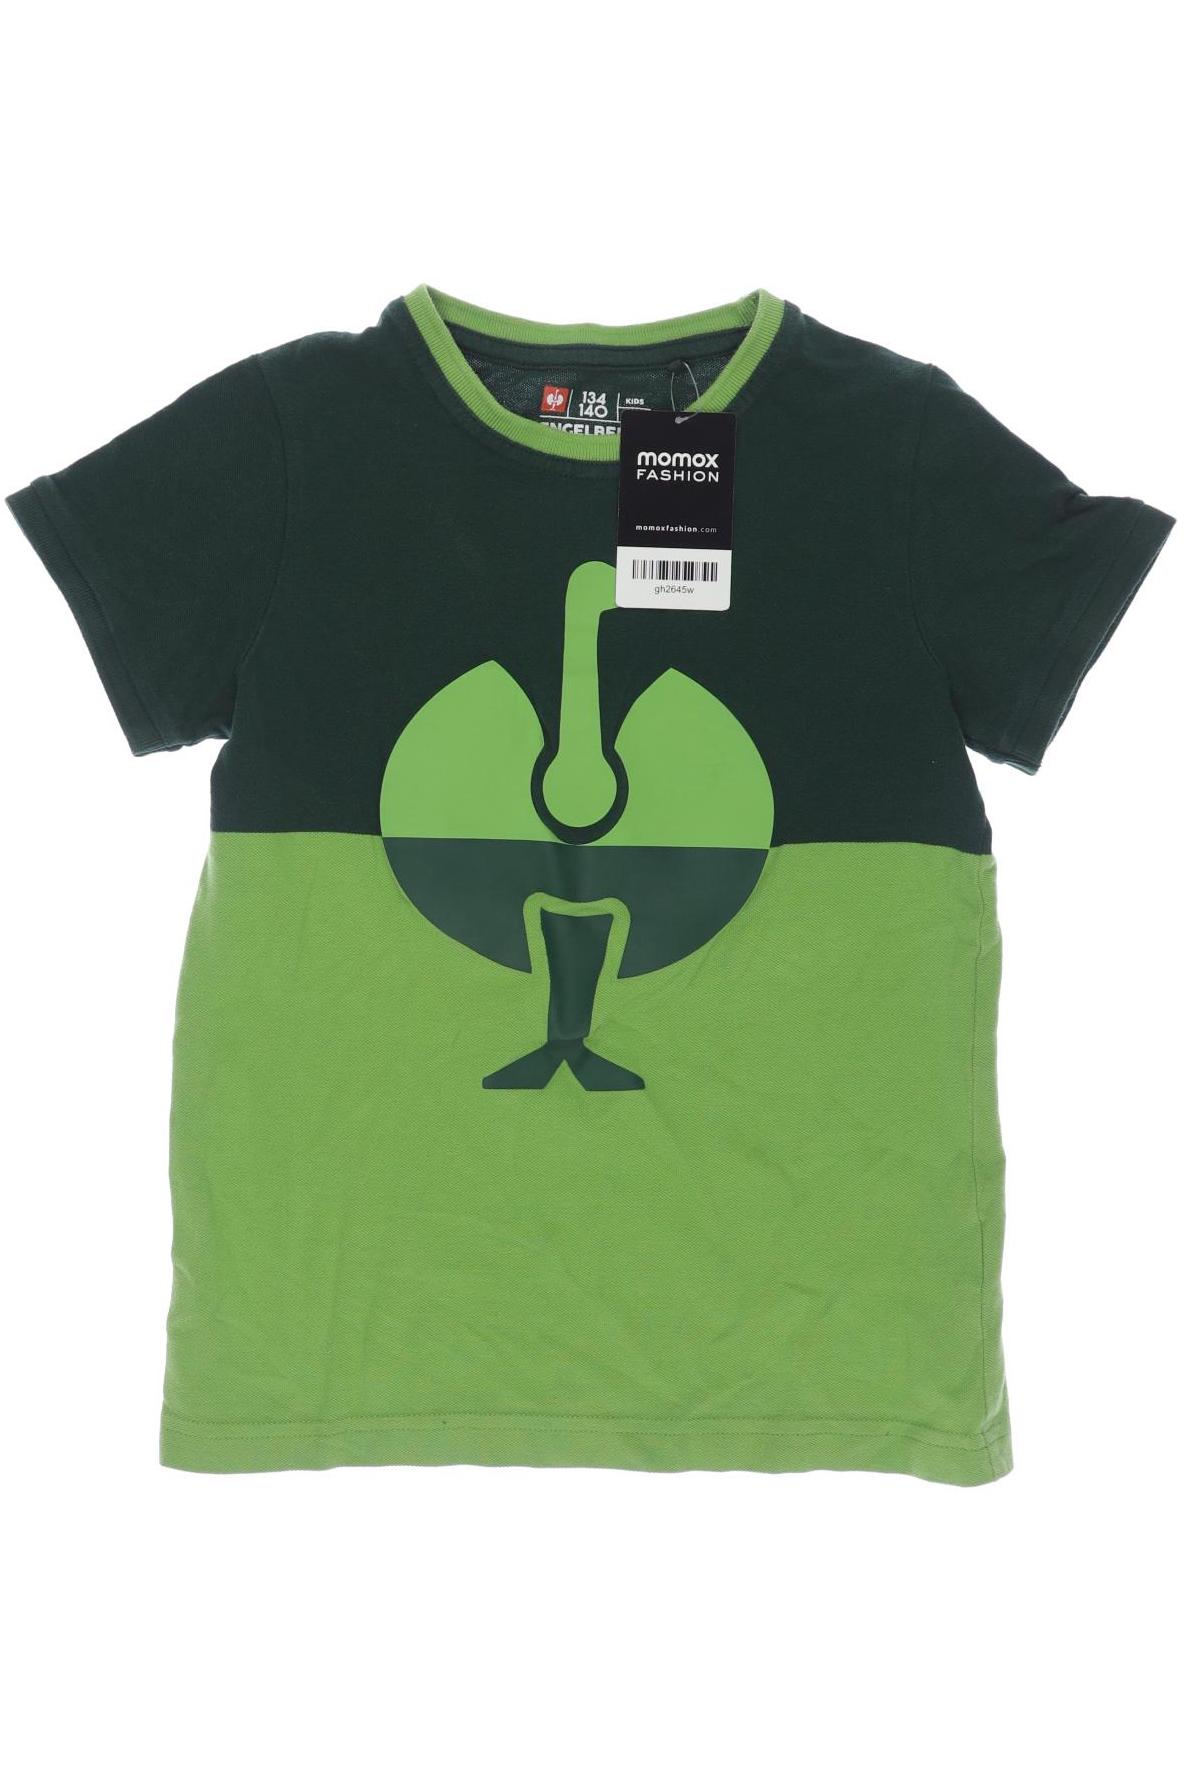 engelbert strauss Jungen T-Shirt, grün von engelbert strauss